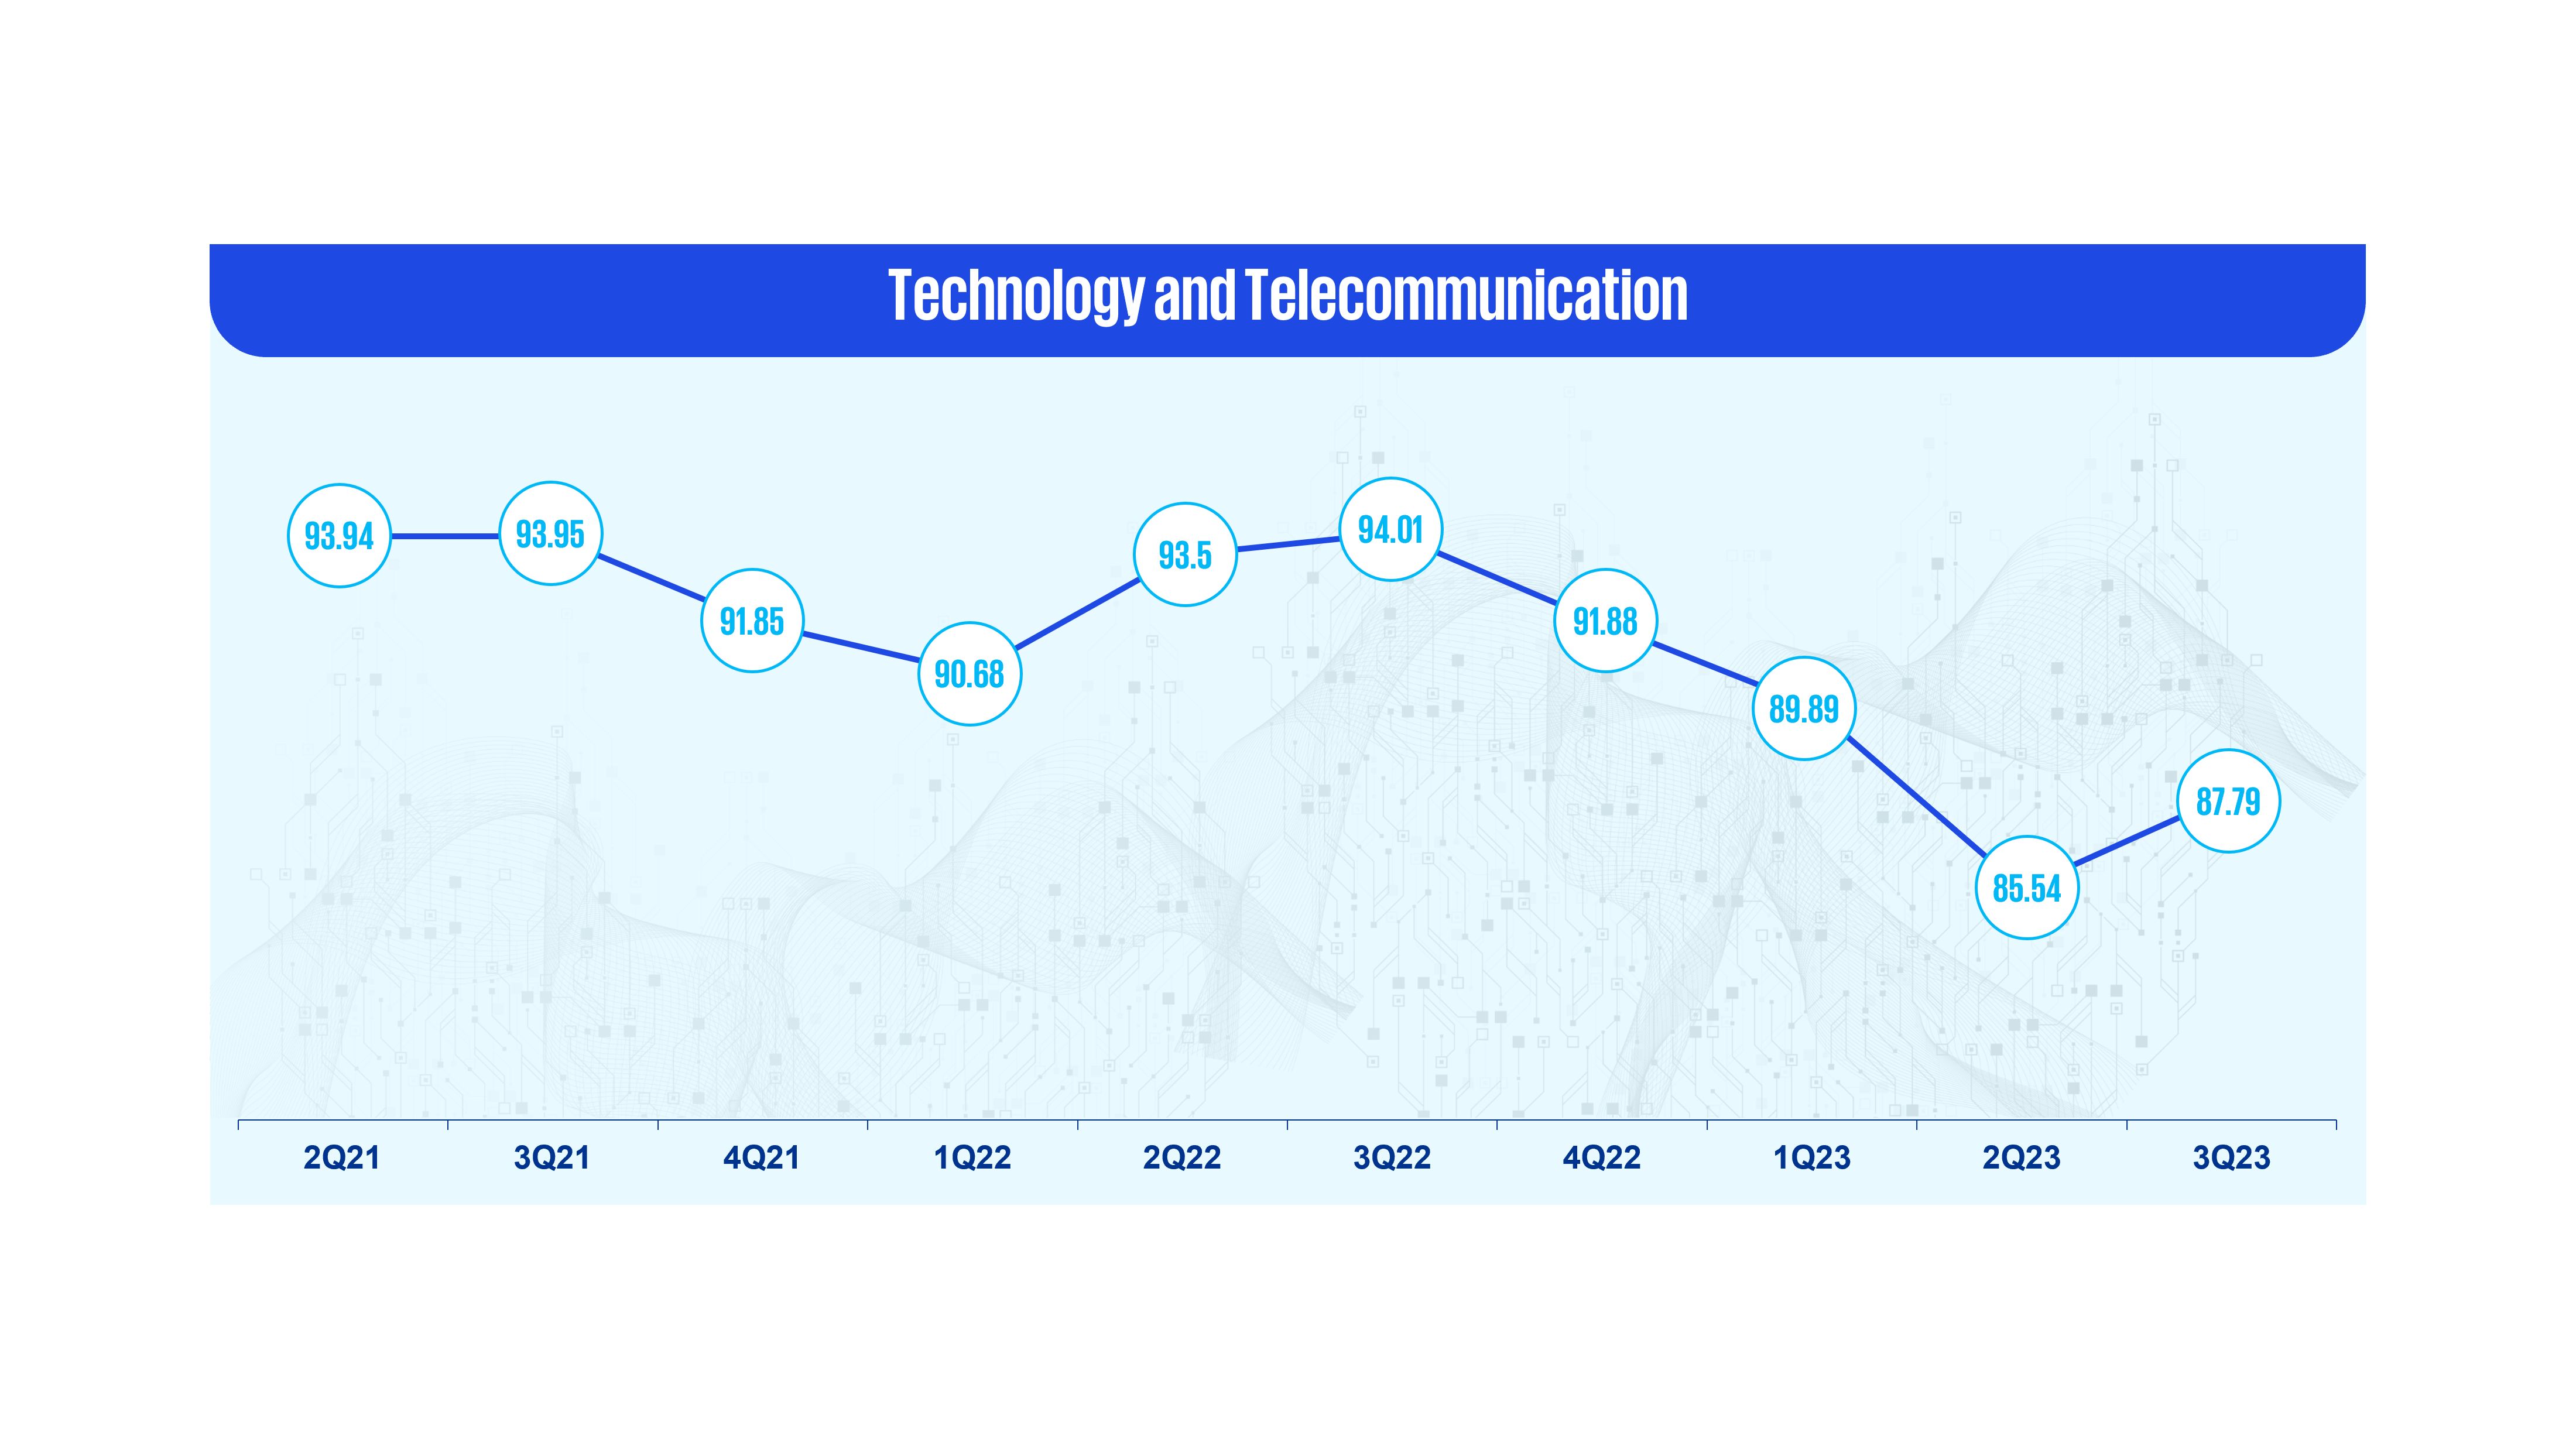 Technology and telecommunications